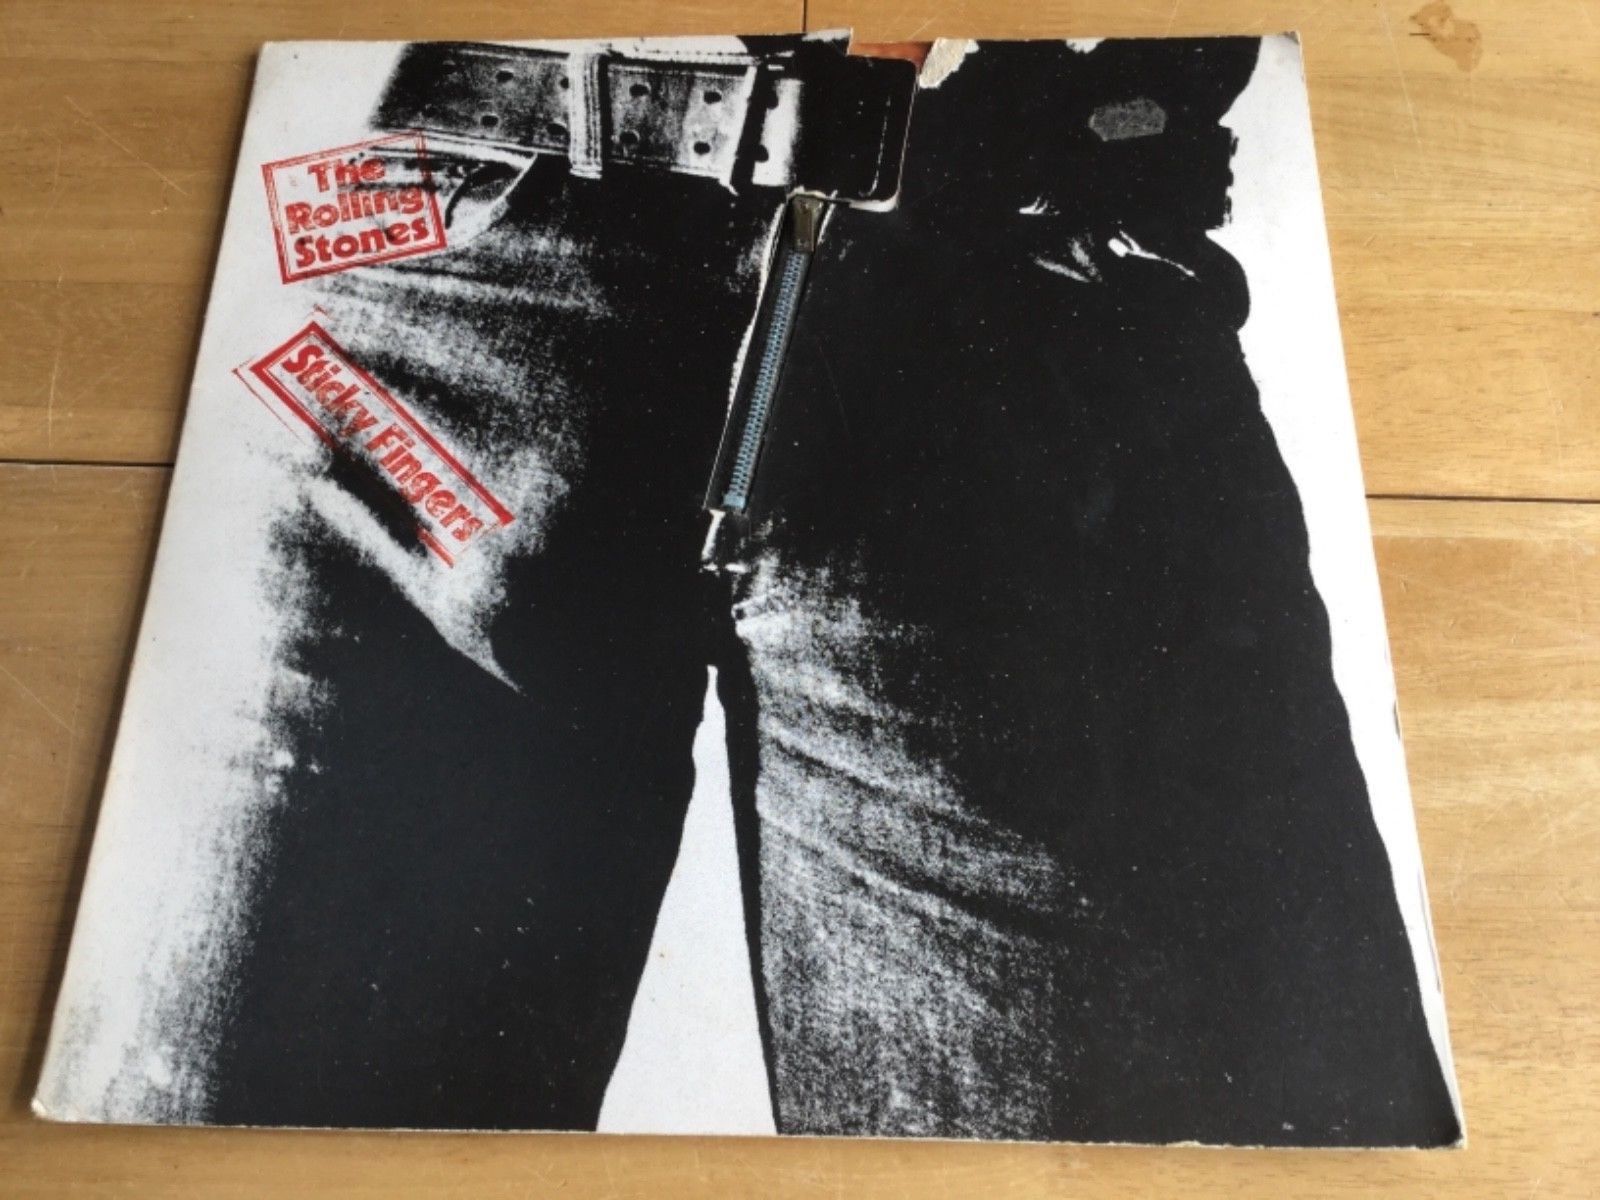  Rolling Stones Sticky Fingers 1971 Vinyl LP A3/B4 T.M.L.  Original UK 1st Press - auction details